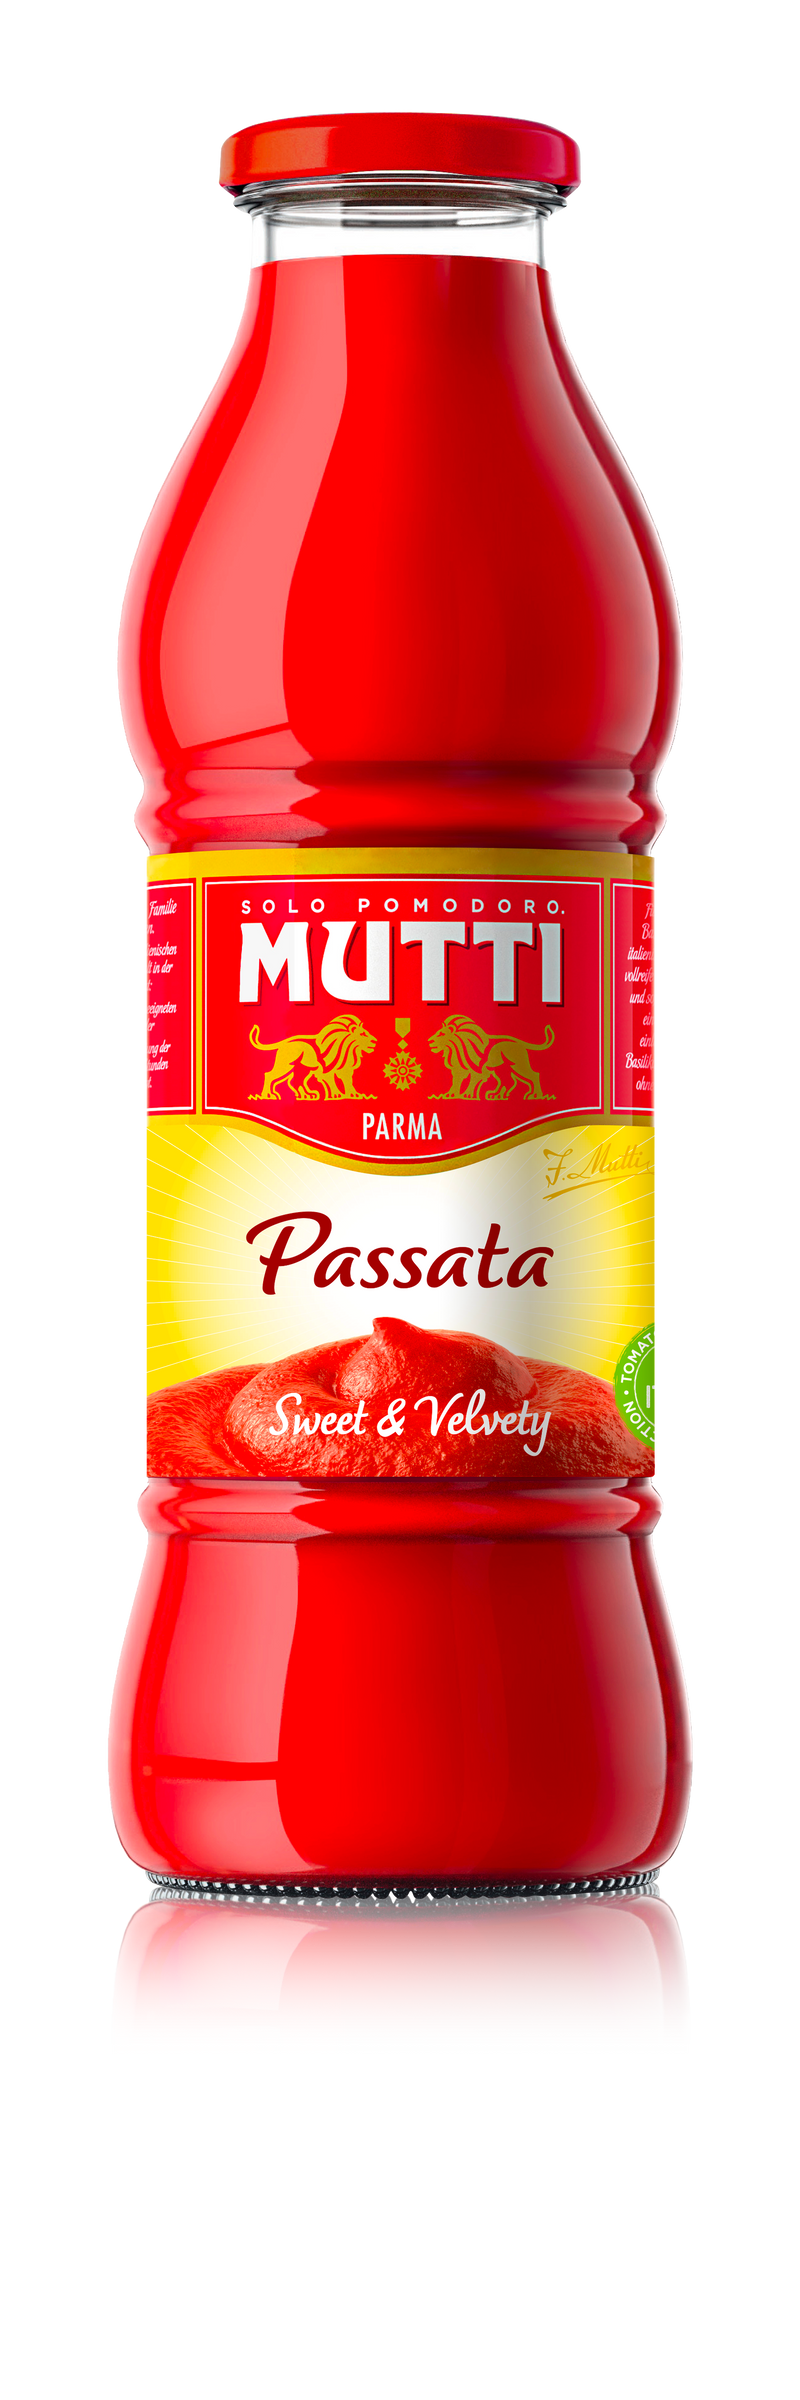 Mutti Passata Bottle 700g